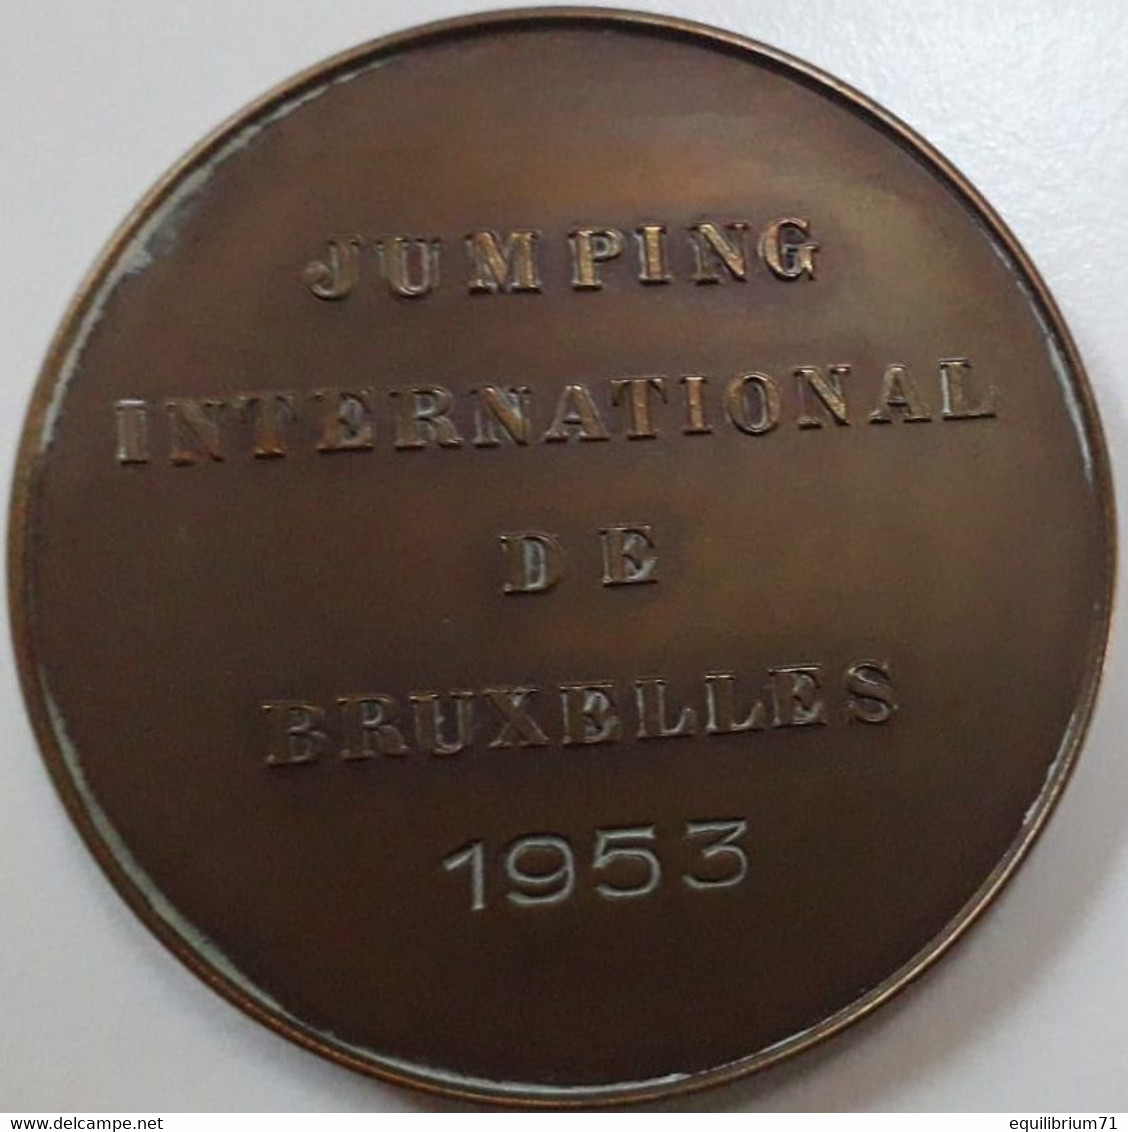 Médaille De Table En Bronze - Baudouin - Jumping International De Bruxelles - 1953 - Signé C. Van Dionant -  Gr - Royaux / De Noblesse